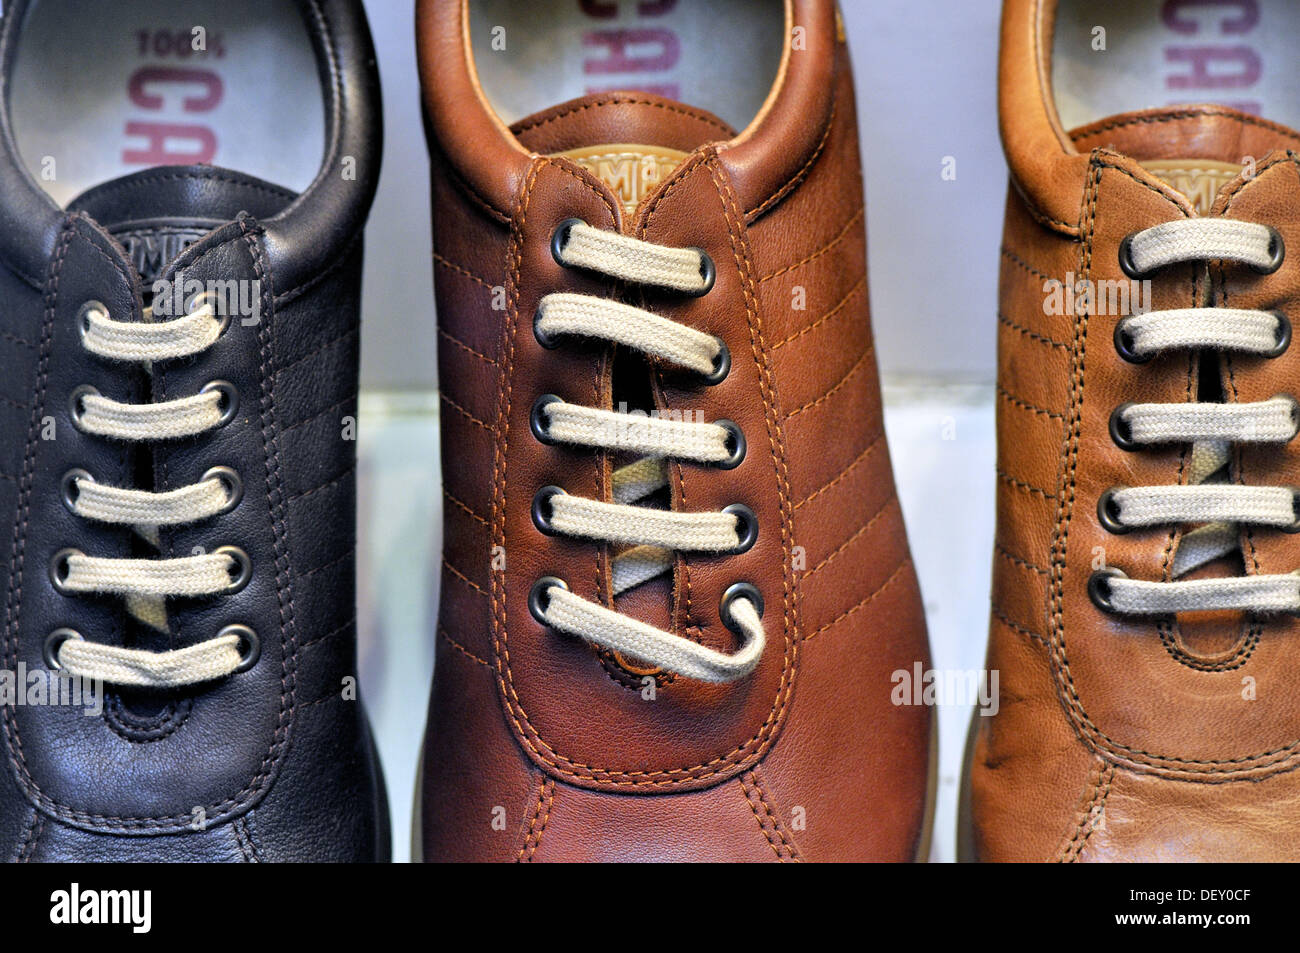 Shoes barcelona immagini e fotografie stock ad alta risoluzione - Alamy